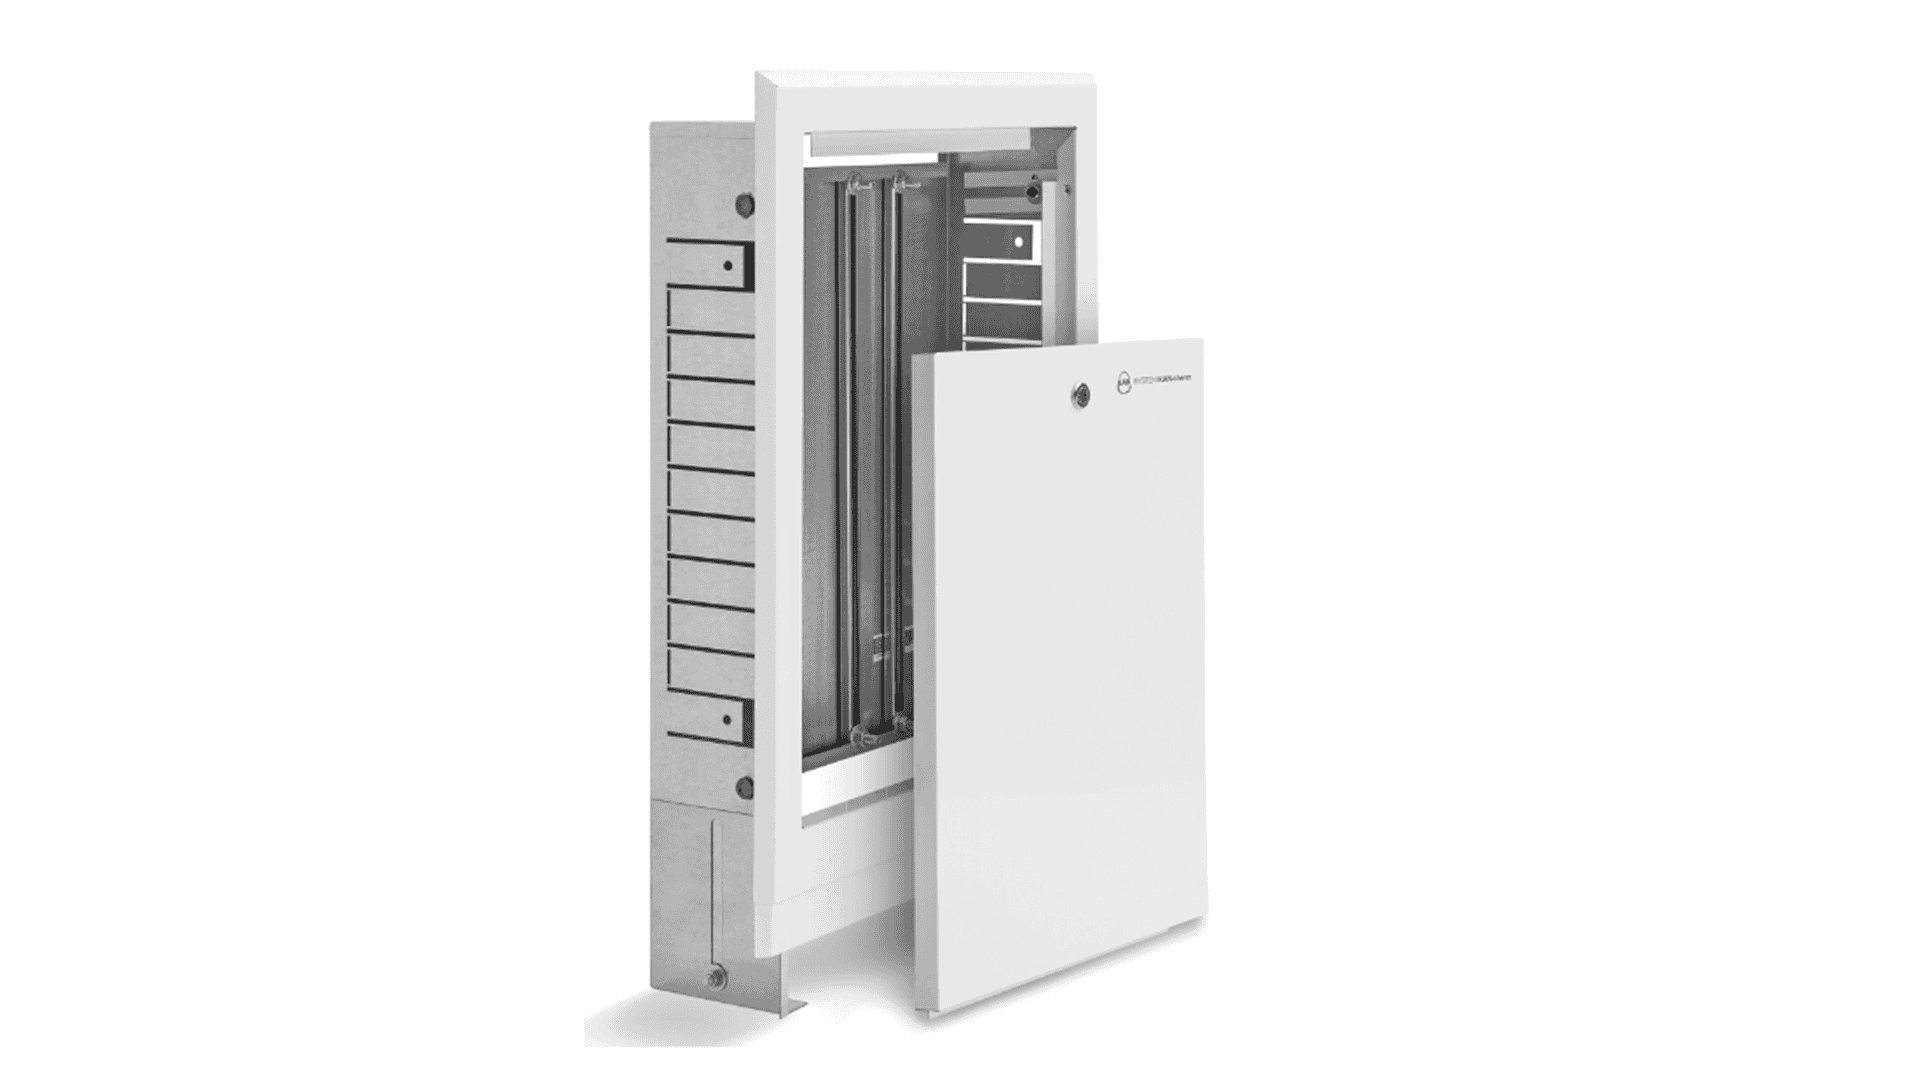 KAN-therm - Instalační skříně Slim a Slim+ - Skřínka pro instalaci do stěny SWPS a SWPSE pro topné instalace a instalace pitné/užitkové vody